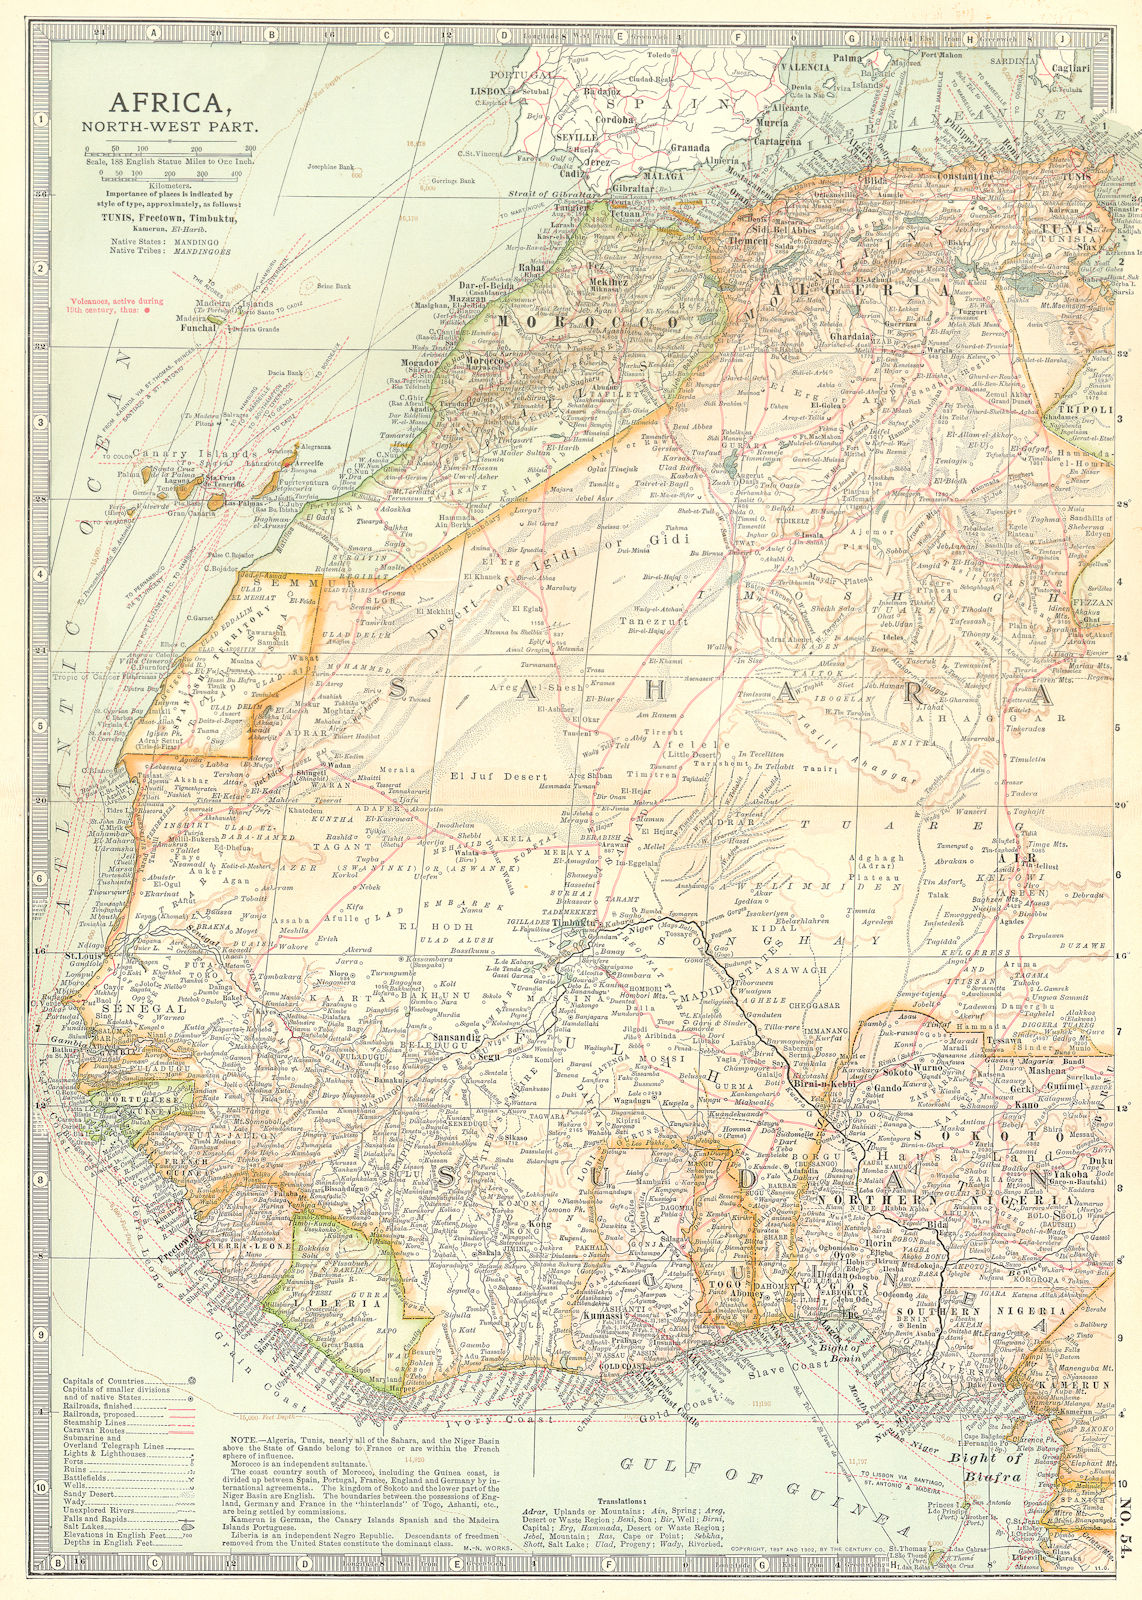 WEST AFRICA. Algeria Morocco Nigeria Senegal Togo Gold Coast Ghana 1903 map